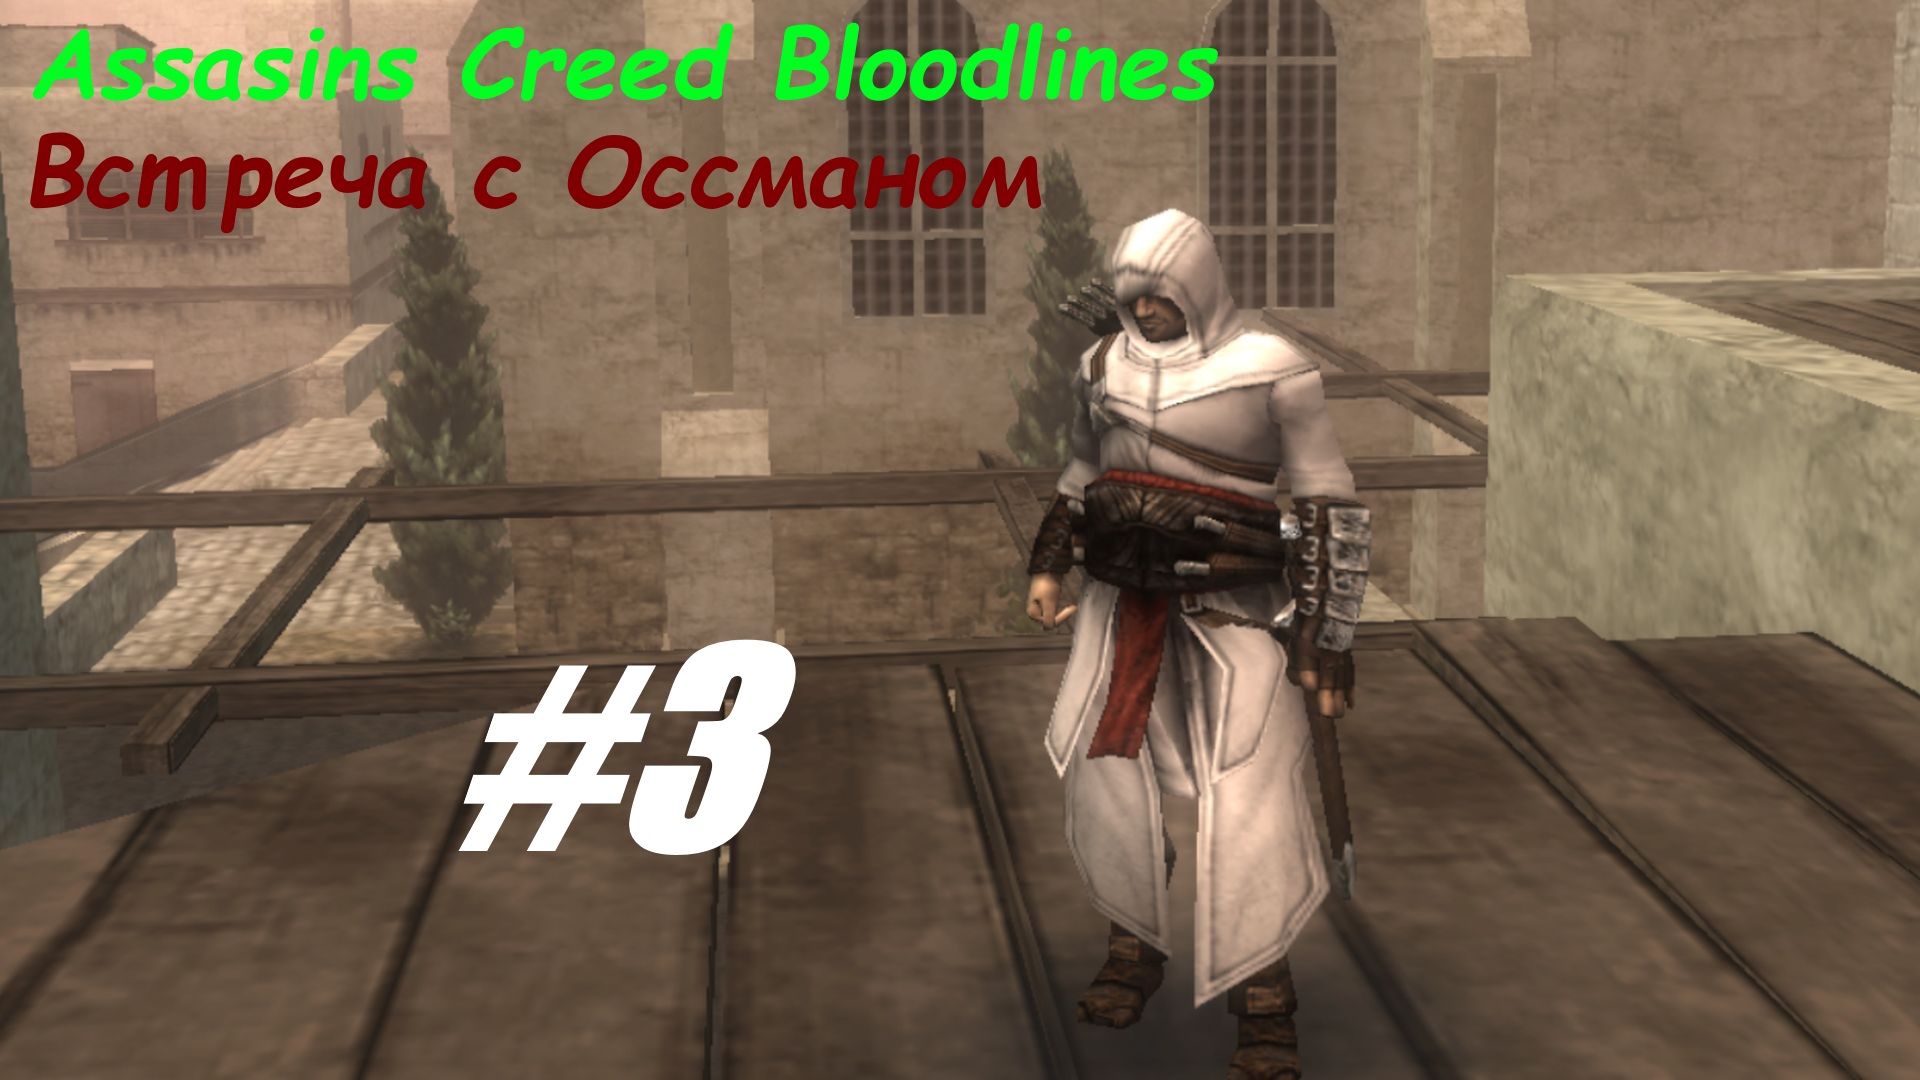 Встреча с Оссманом прохождение Assasins Creed Bloodlines #3